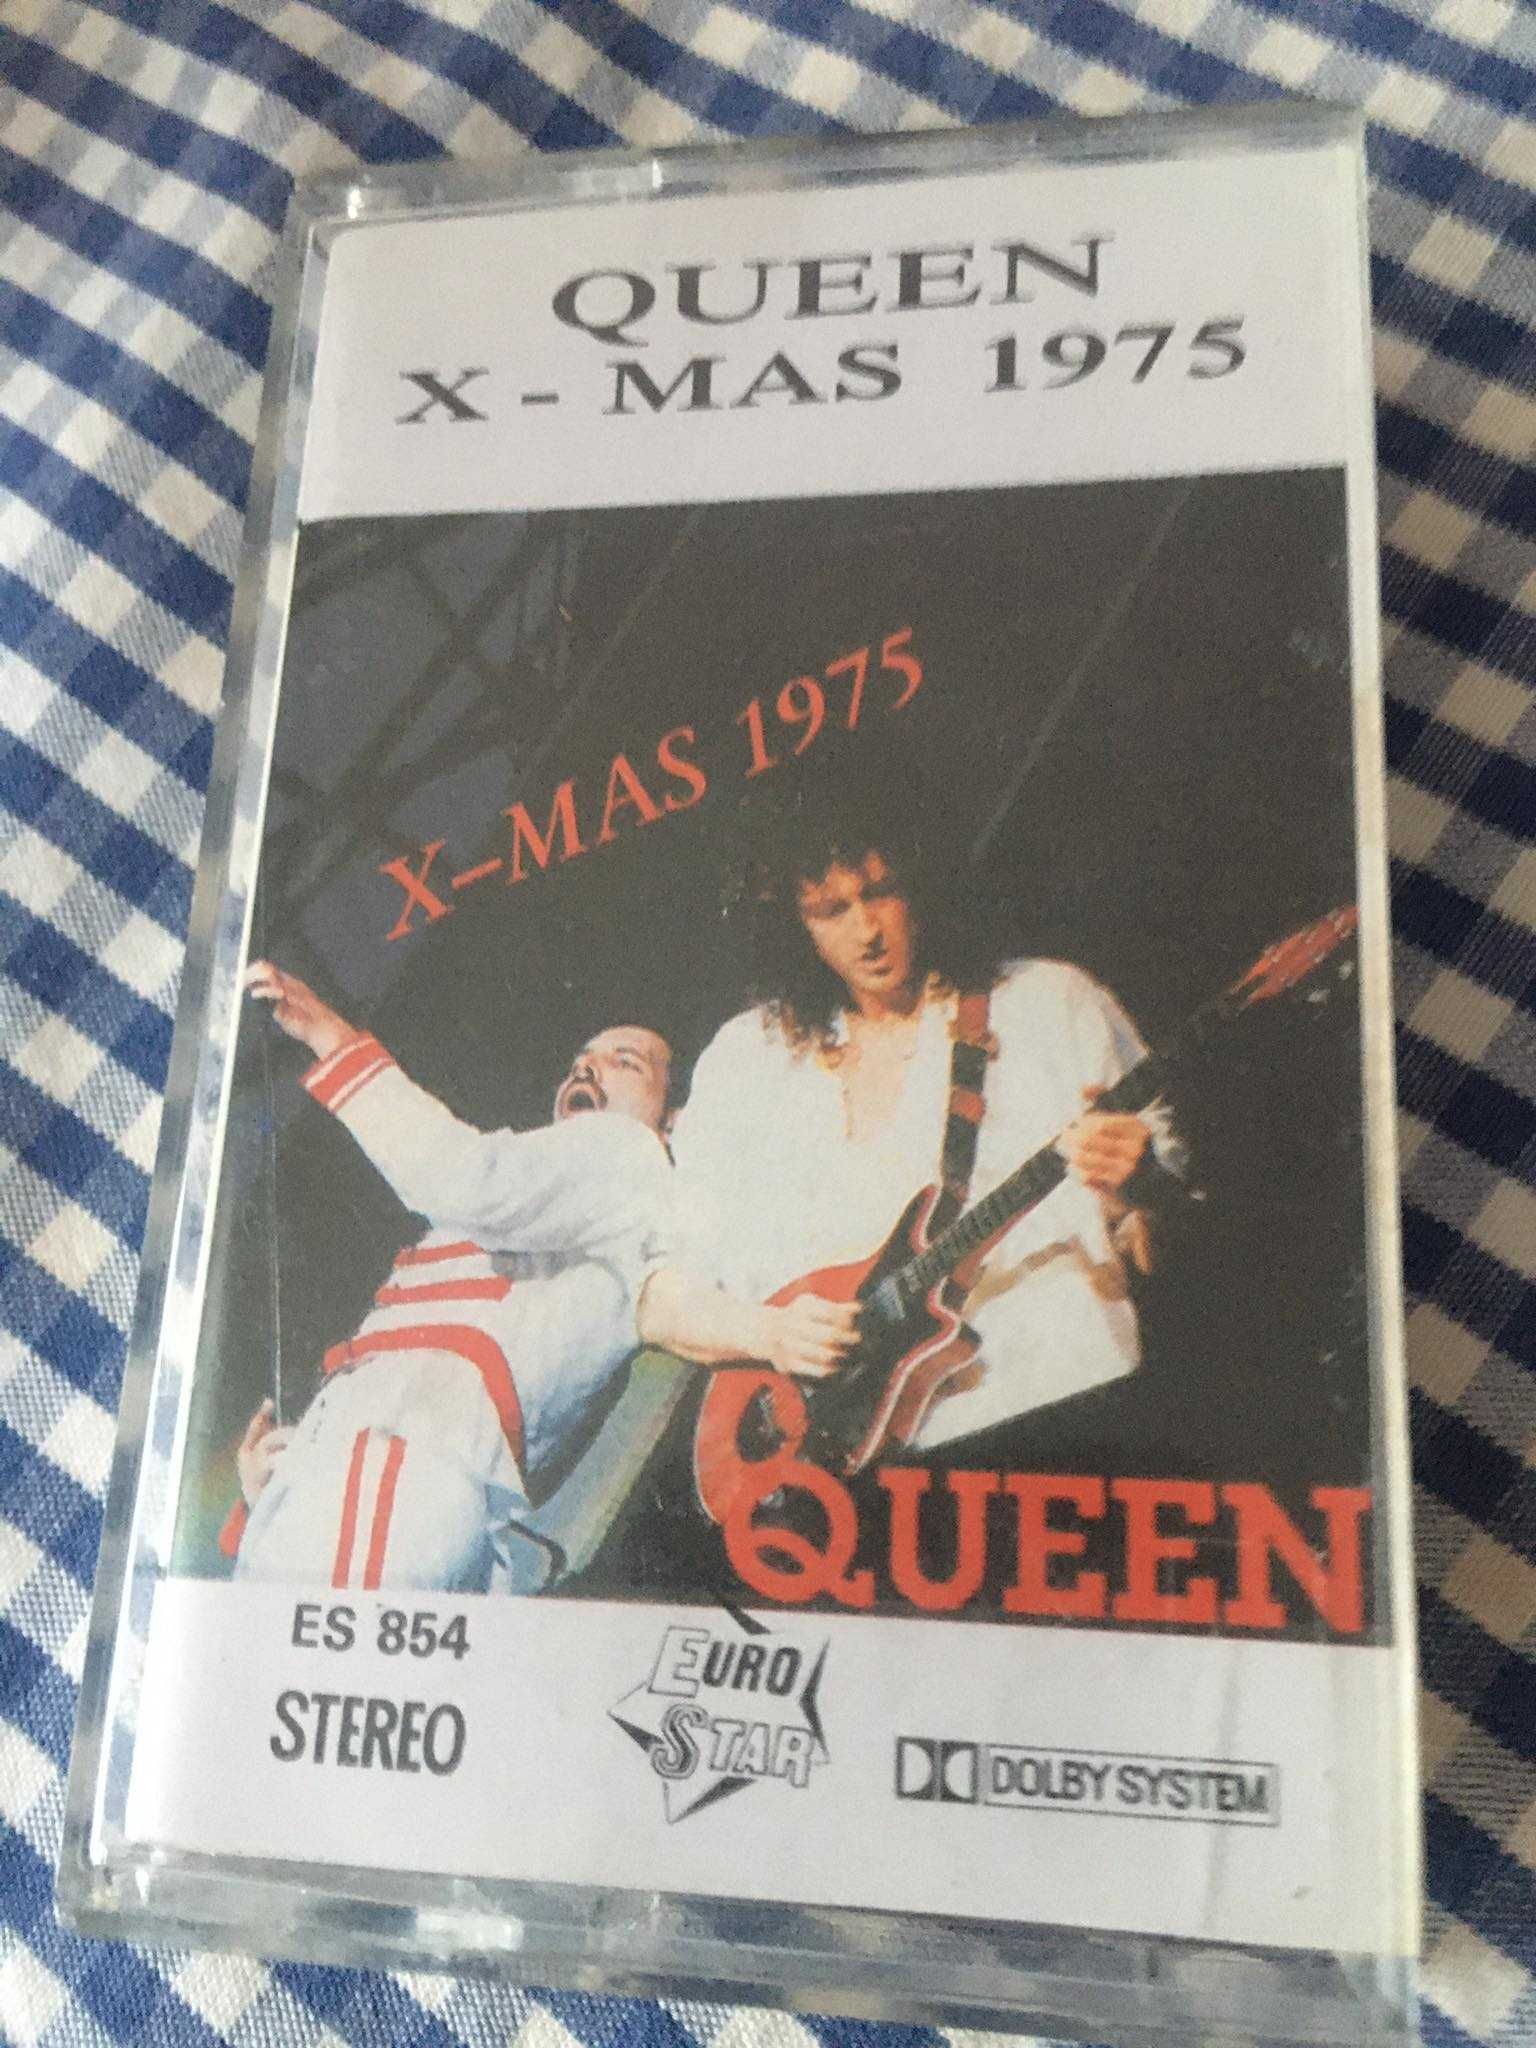 Queen x -mas 1975 kaseta magnetofonowa lata 90 rzadka